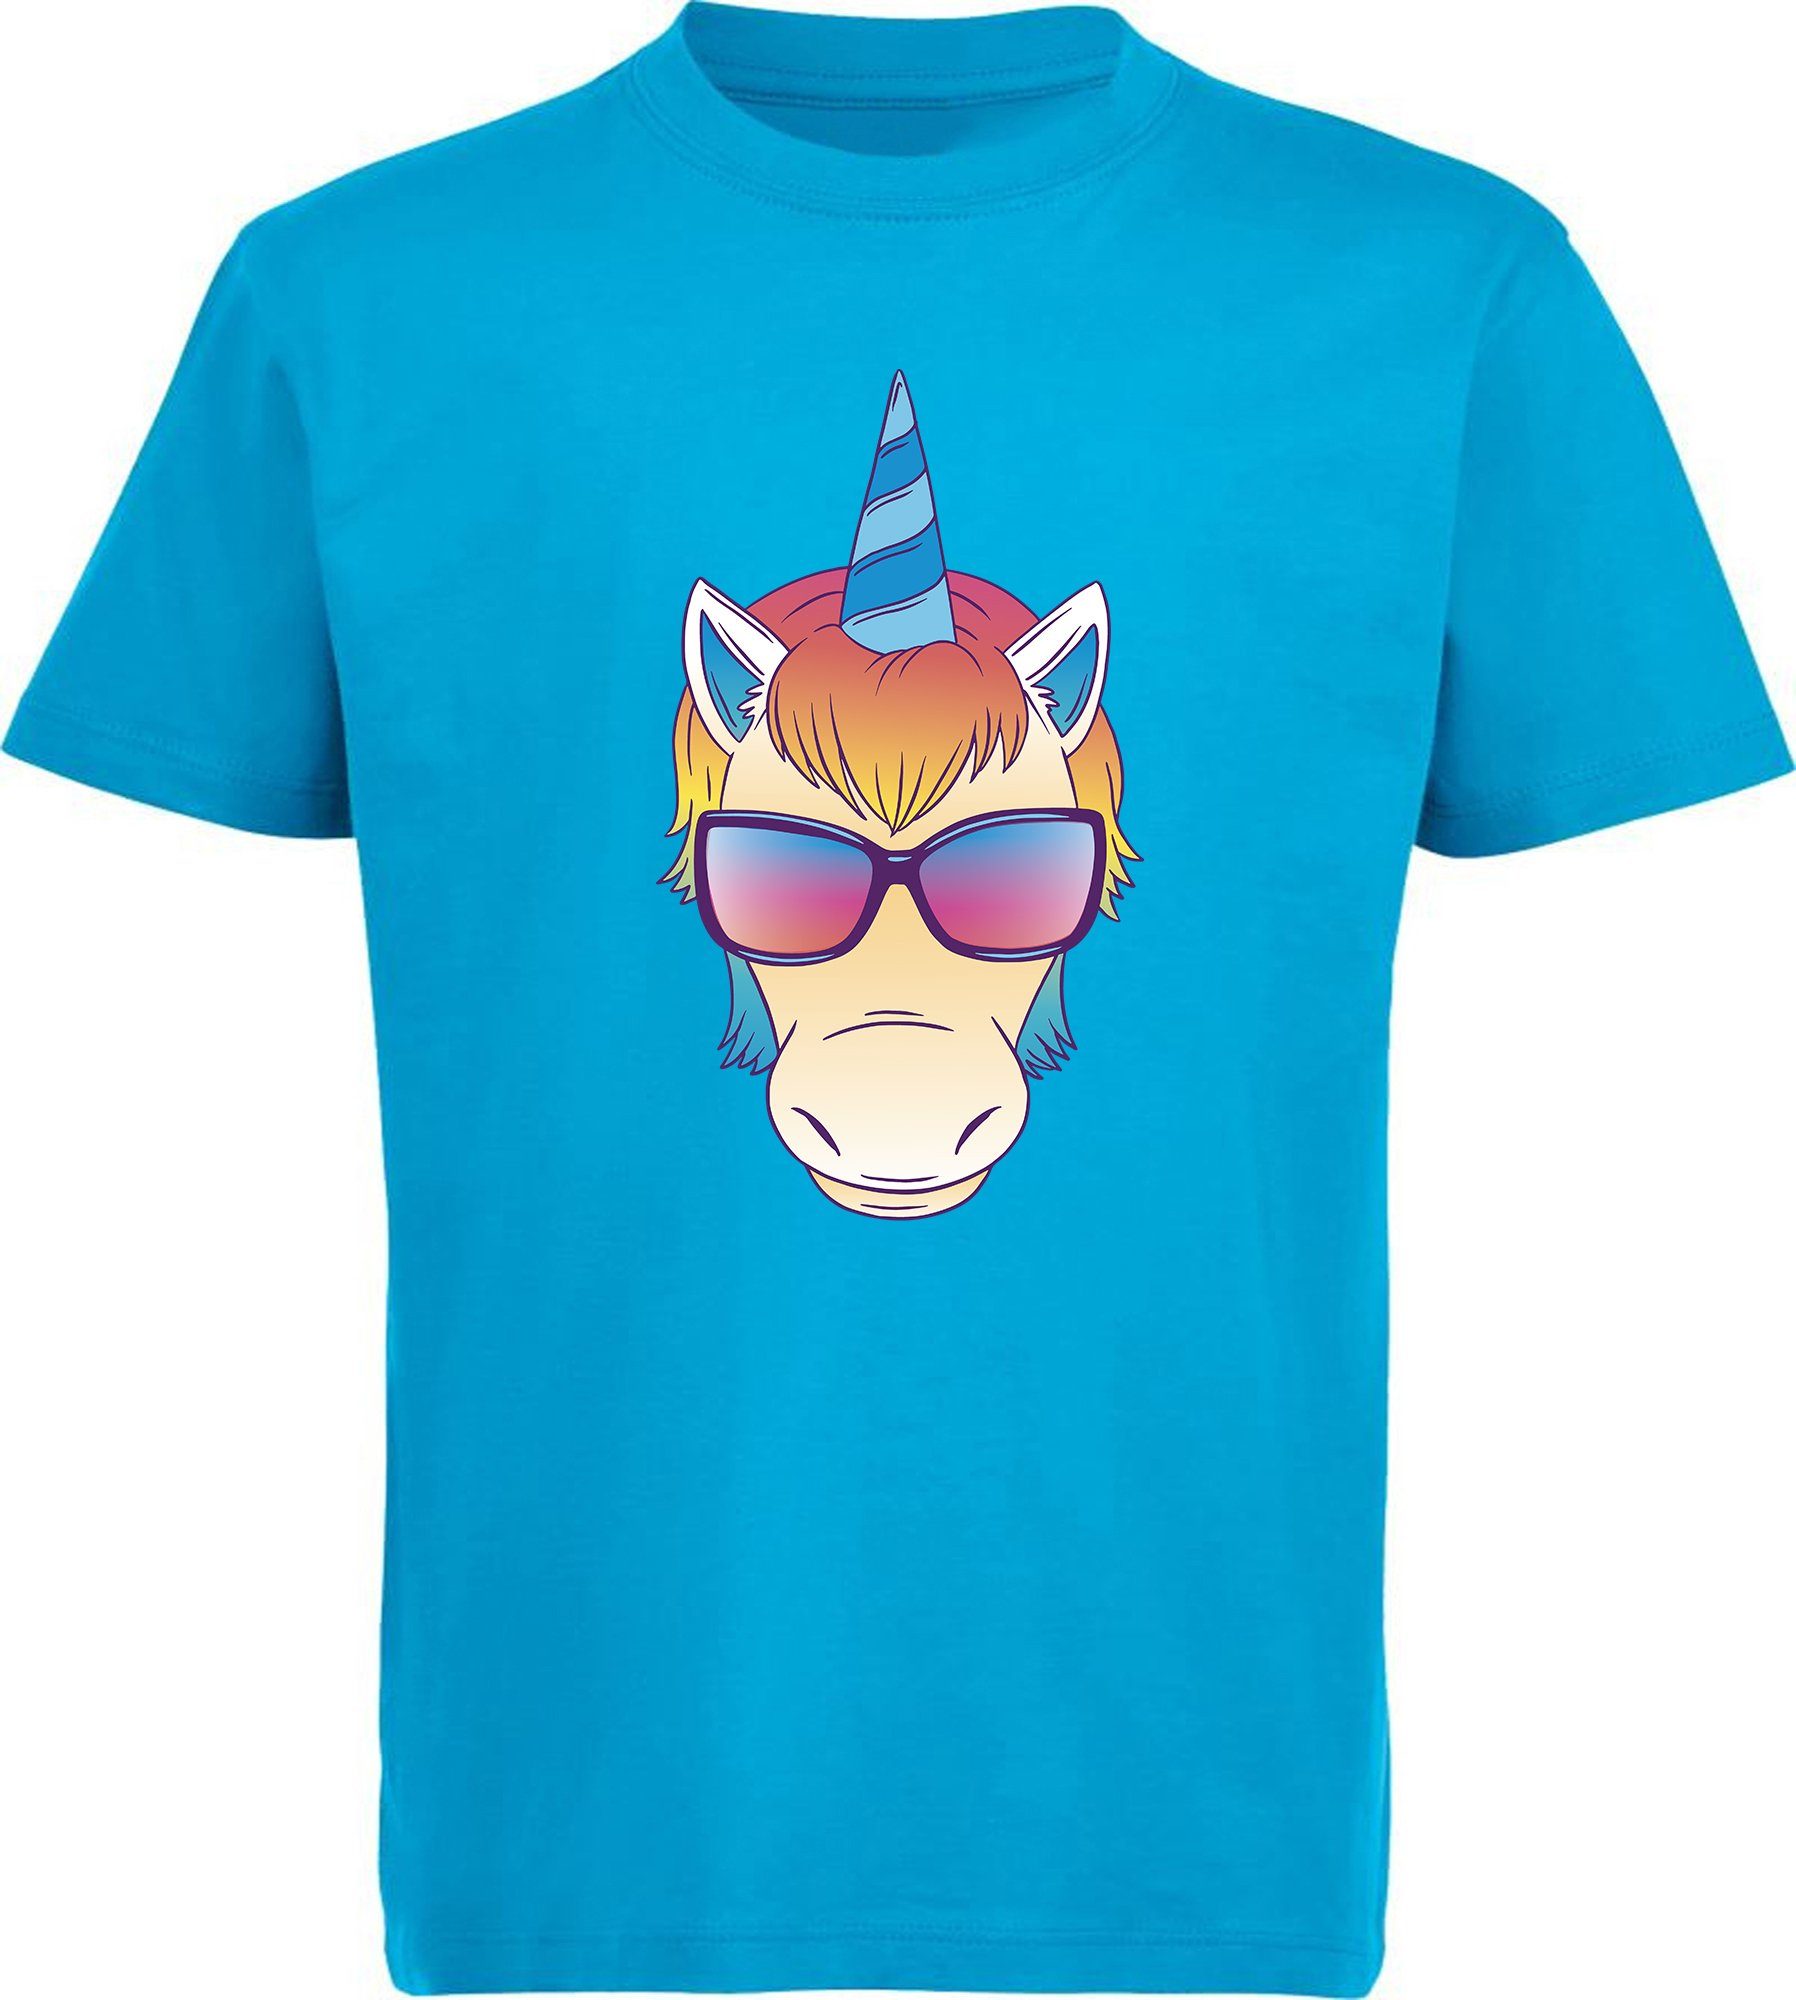 MyDesign24 T-Shirt Kinder Print Shirt bedruckt - Einhorn Kopf mit Sonnenbrille Baumwollshirt mit Aufdruck, i255 aqua blau